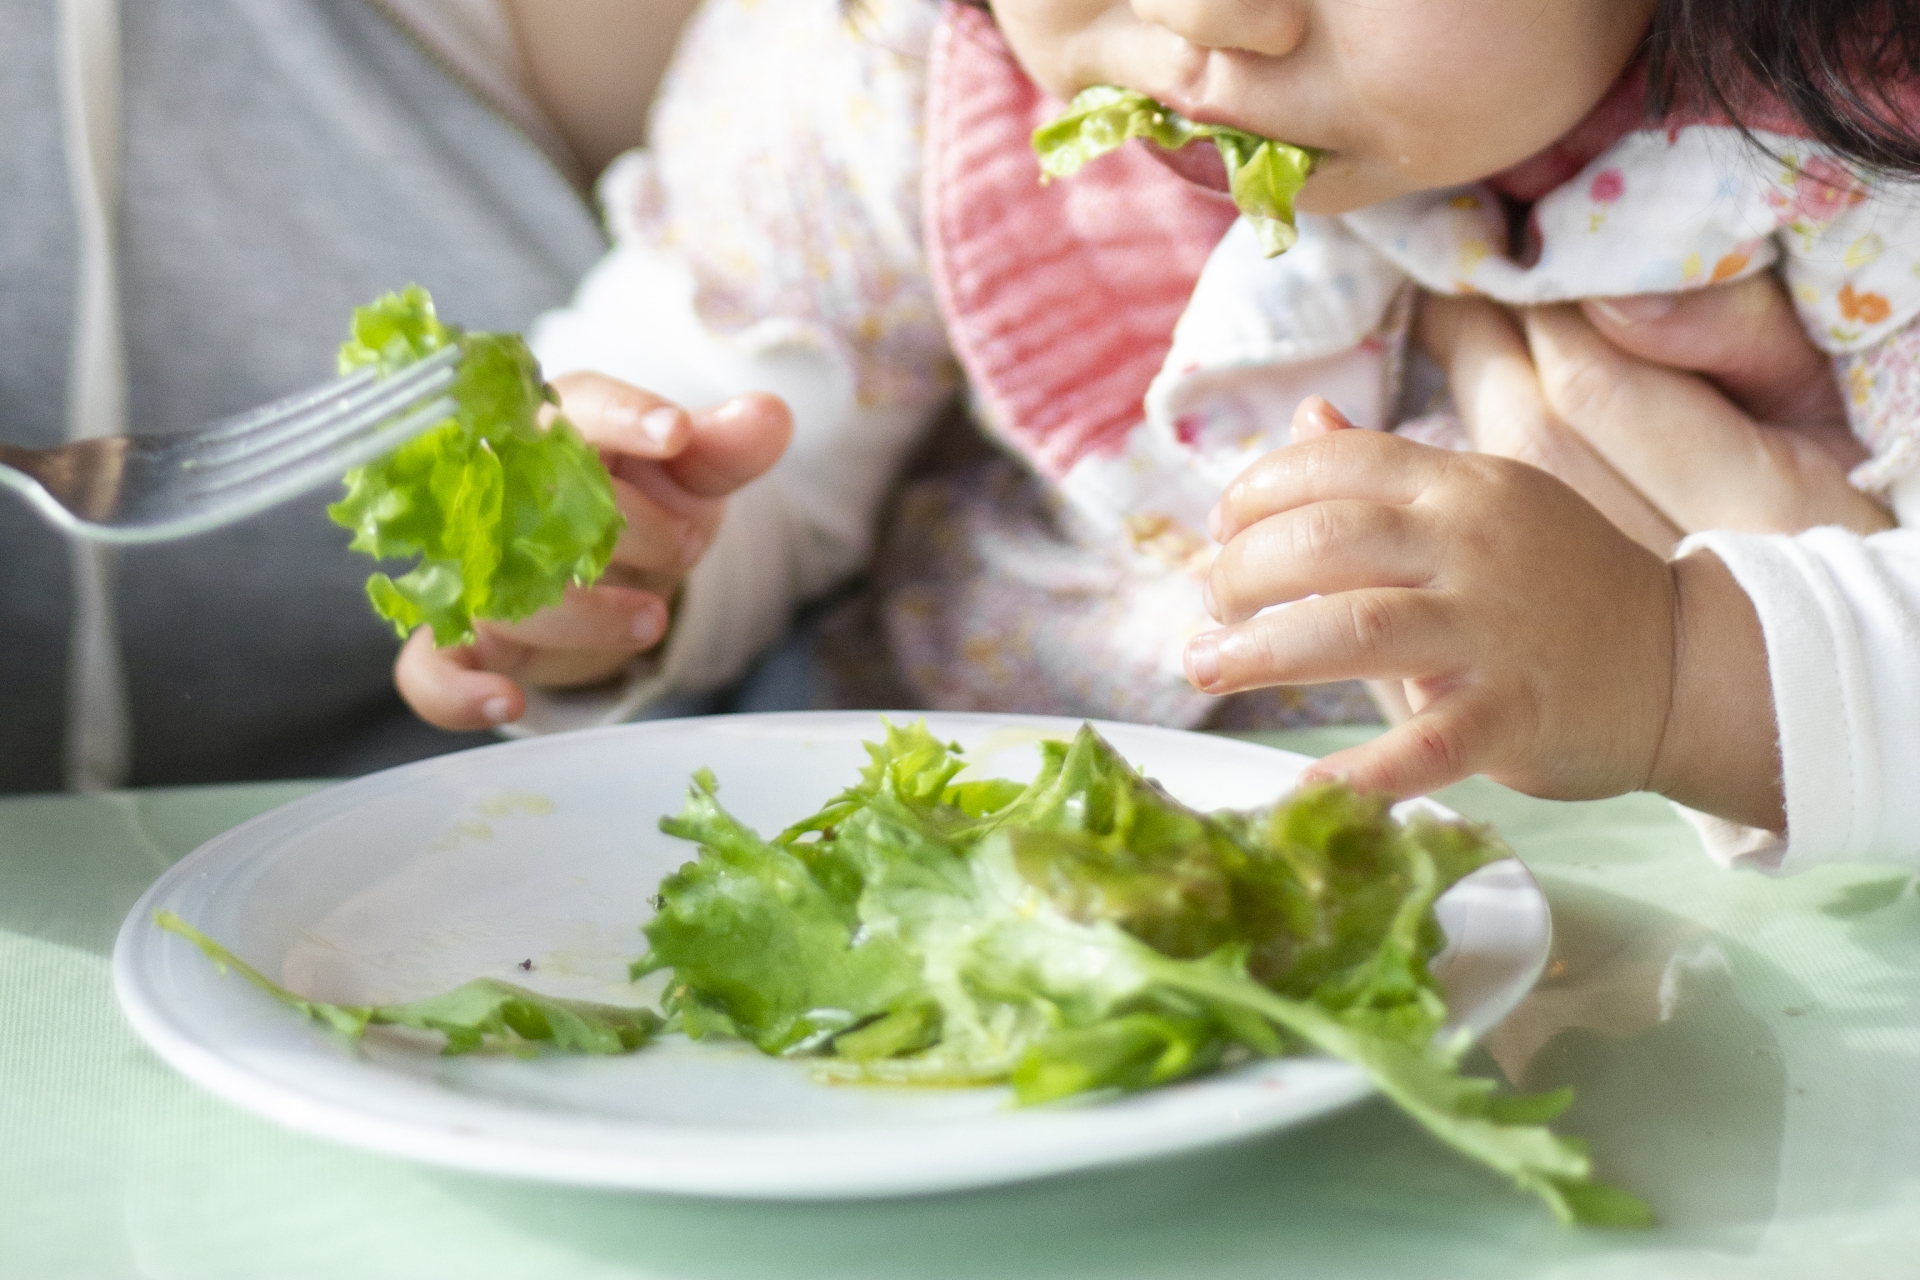 レタスを食べる幼児